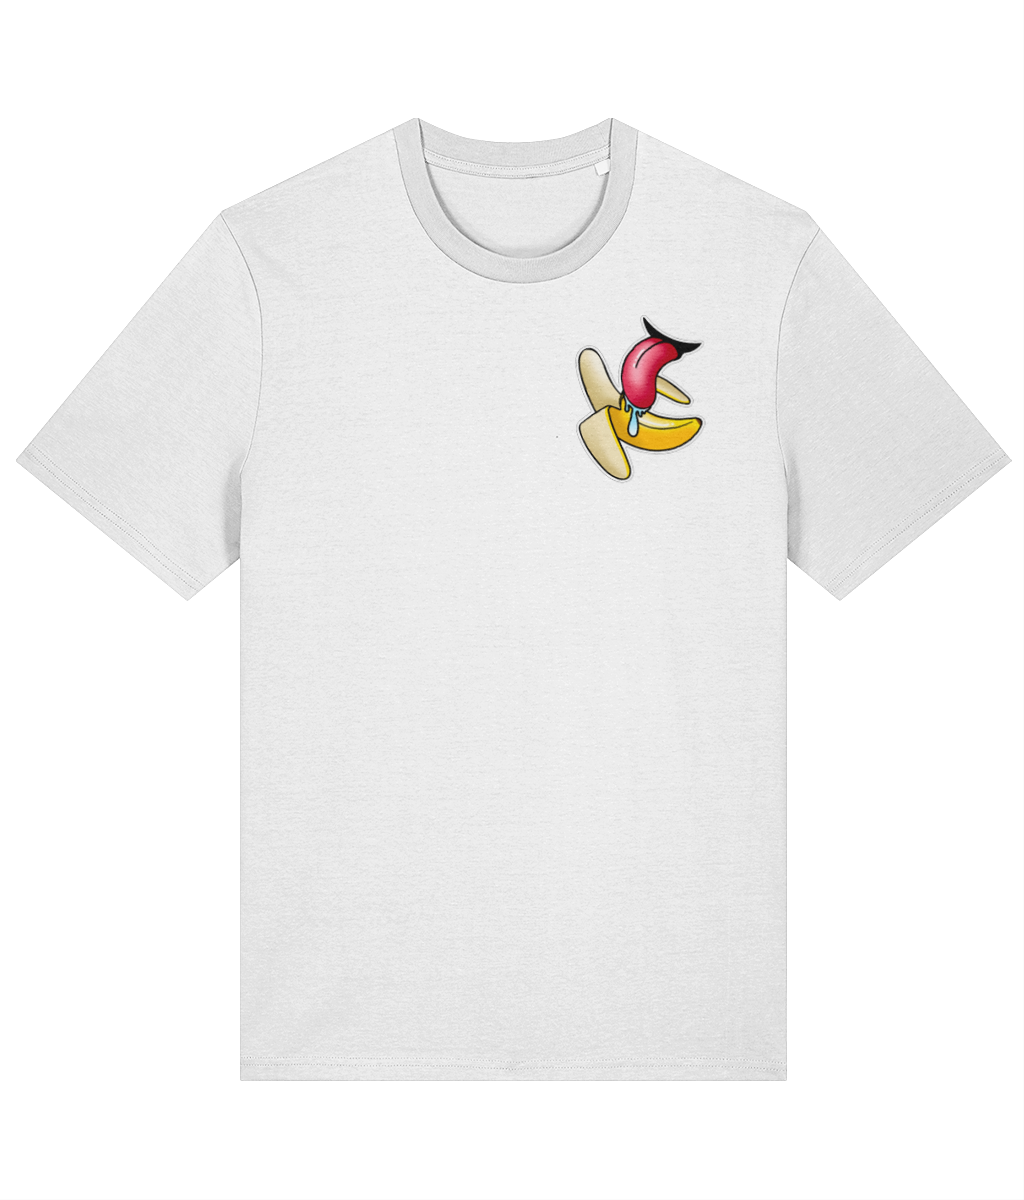 Peel T-Shirt